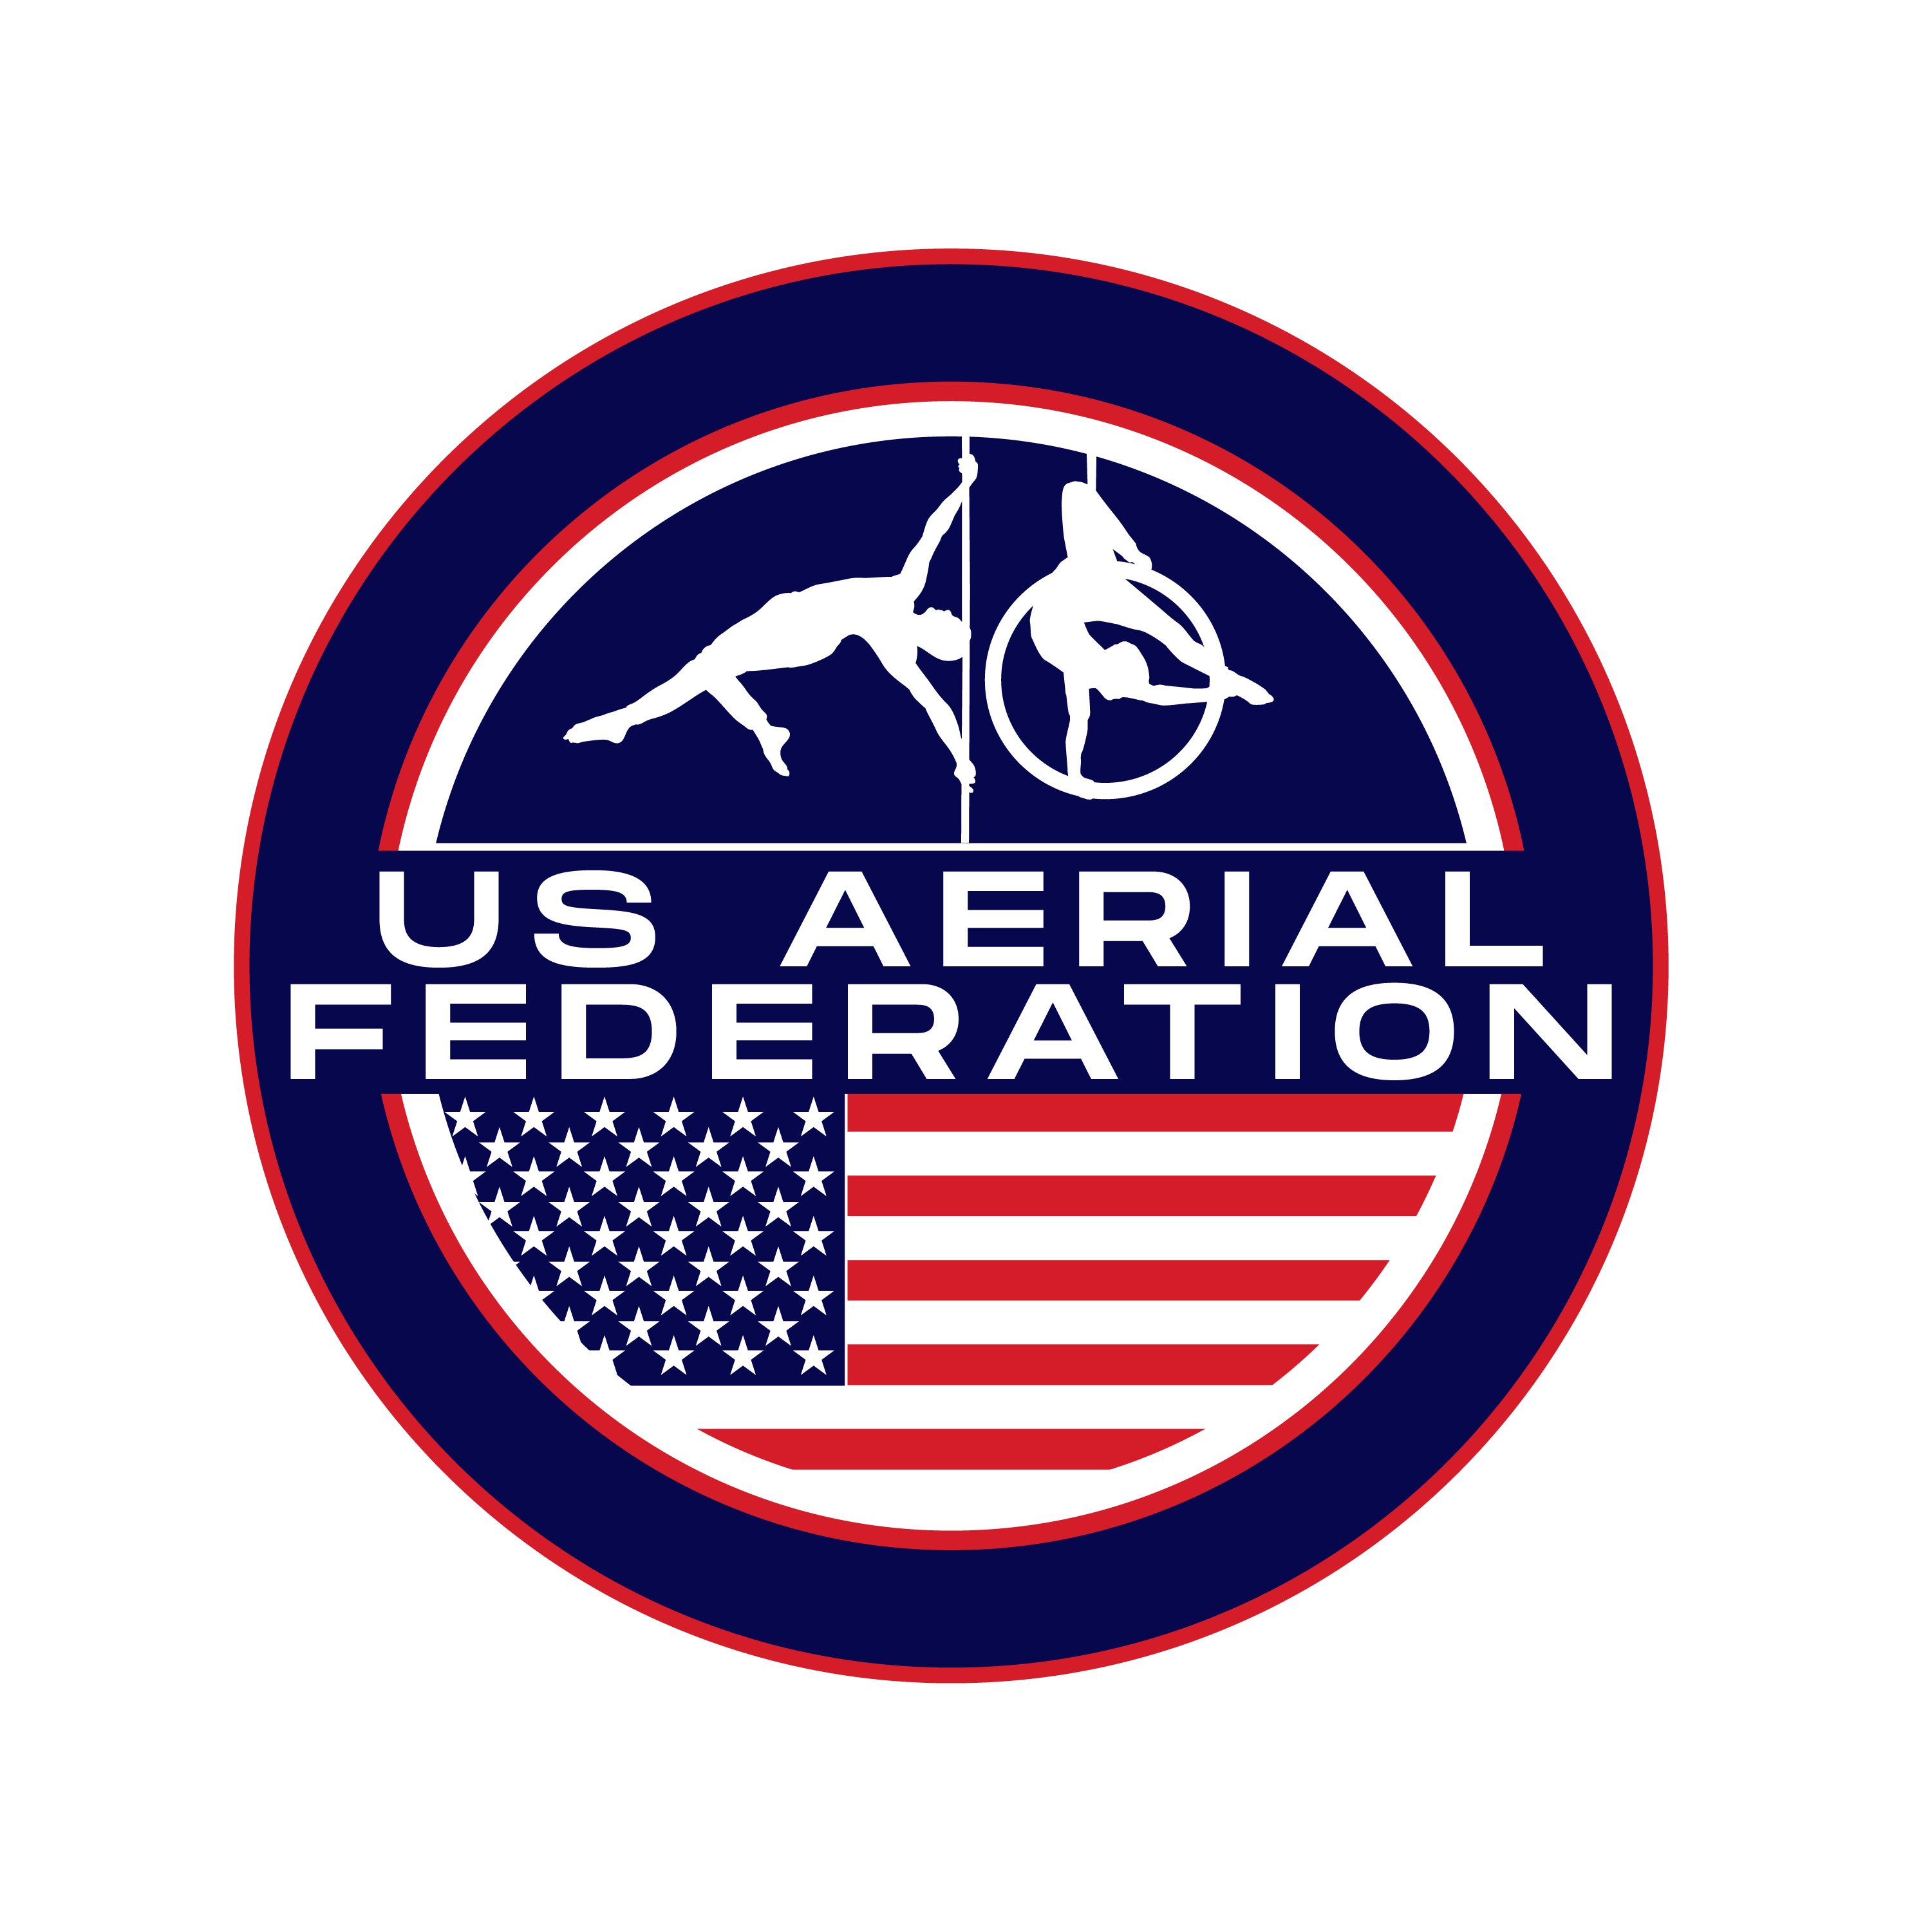 US Aerial Federation logo.